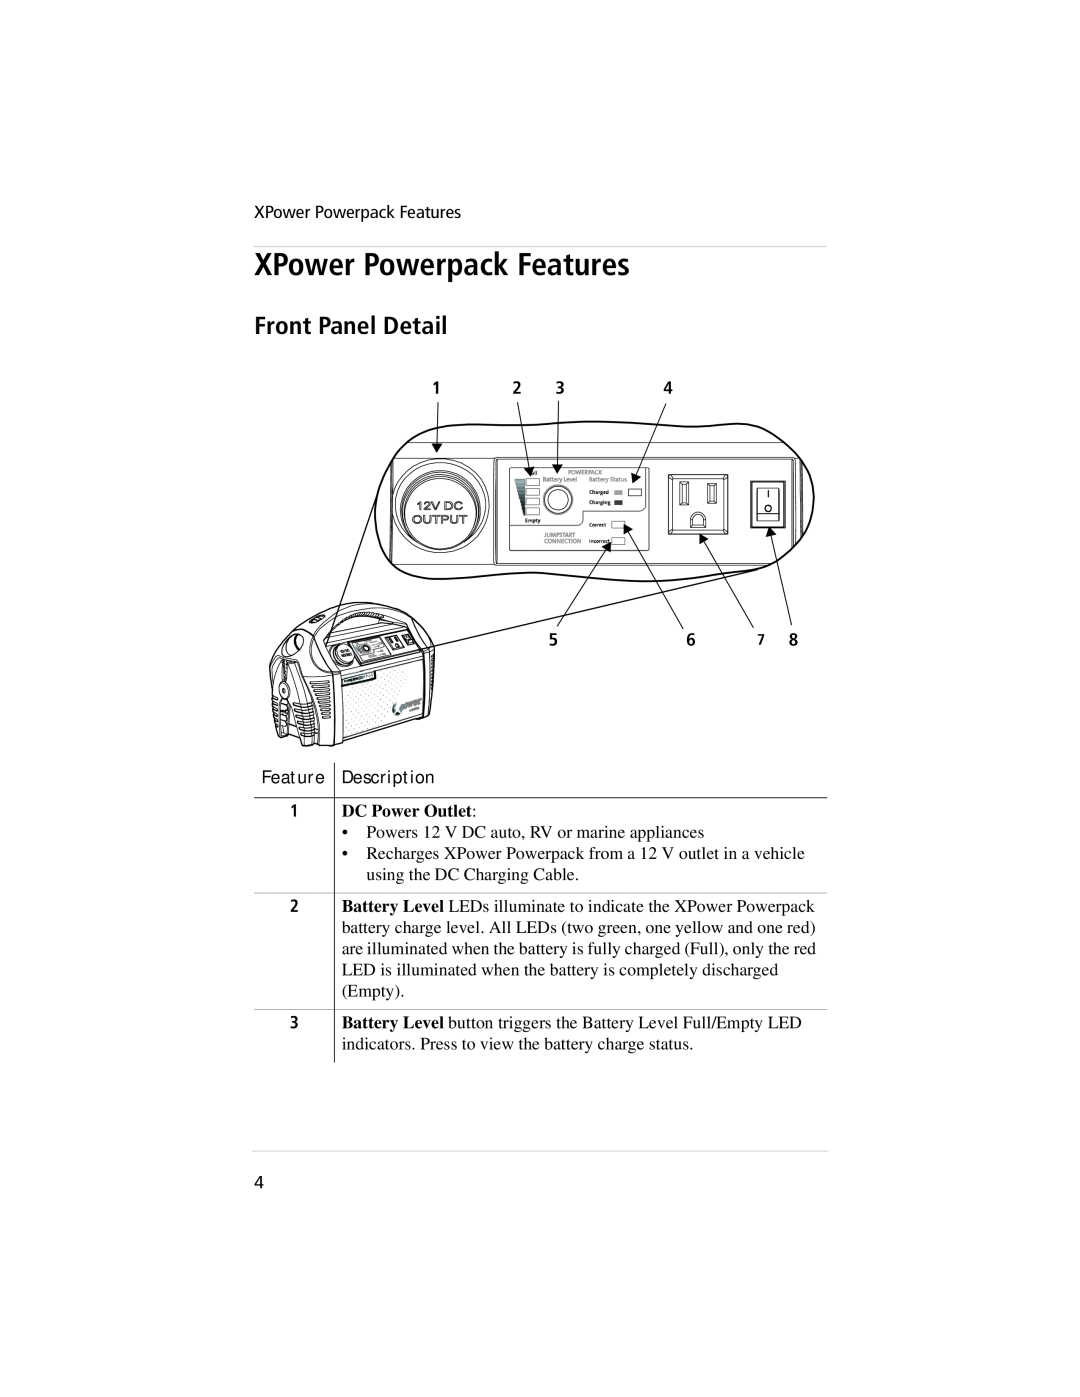 Xantrex Technology 800, 400 manual XPower Powerpack Features, Front Panel Detail, Feature Description, DC Power Outlet 